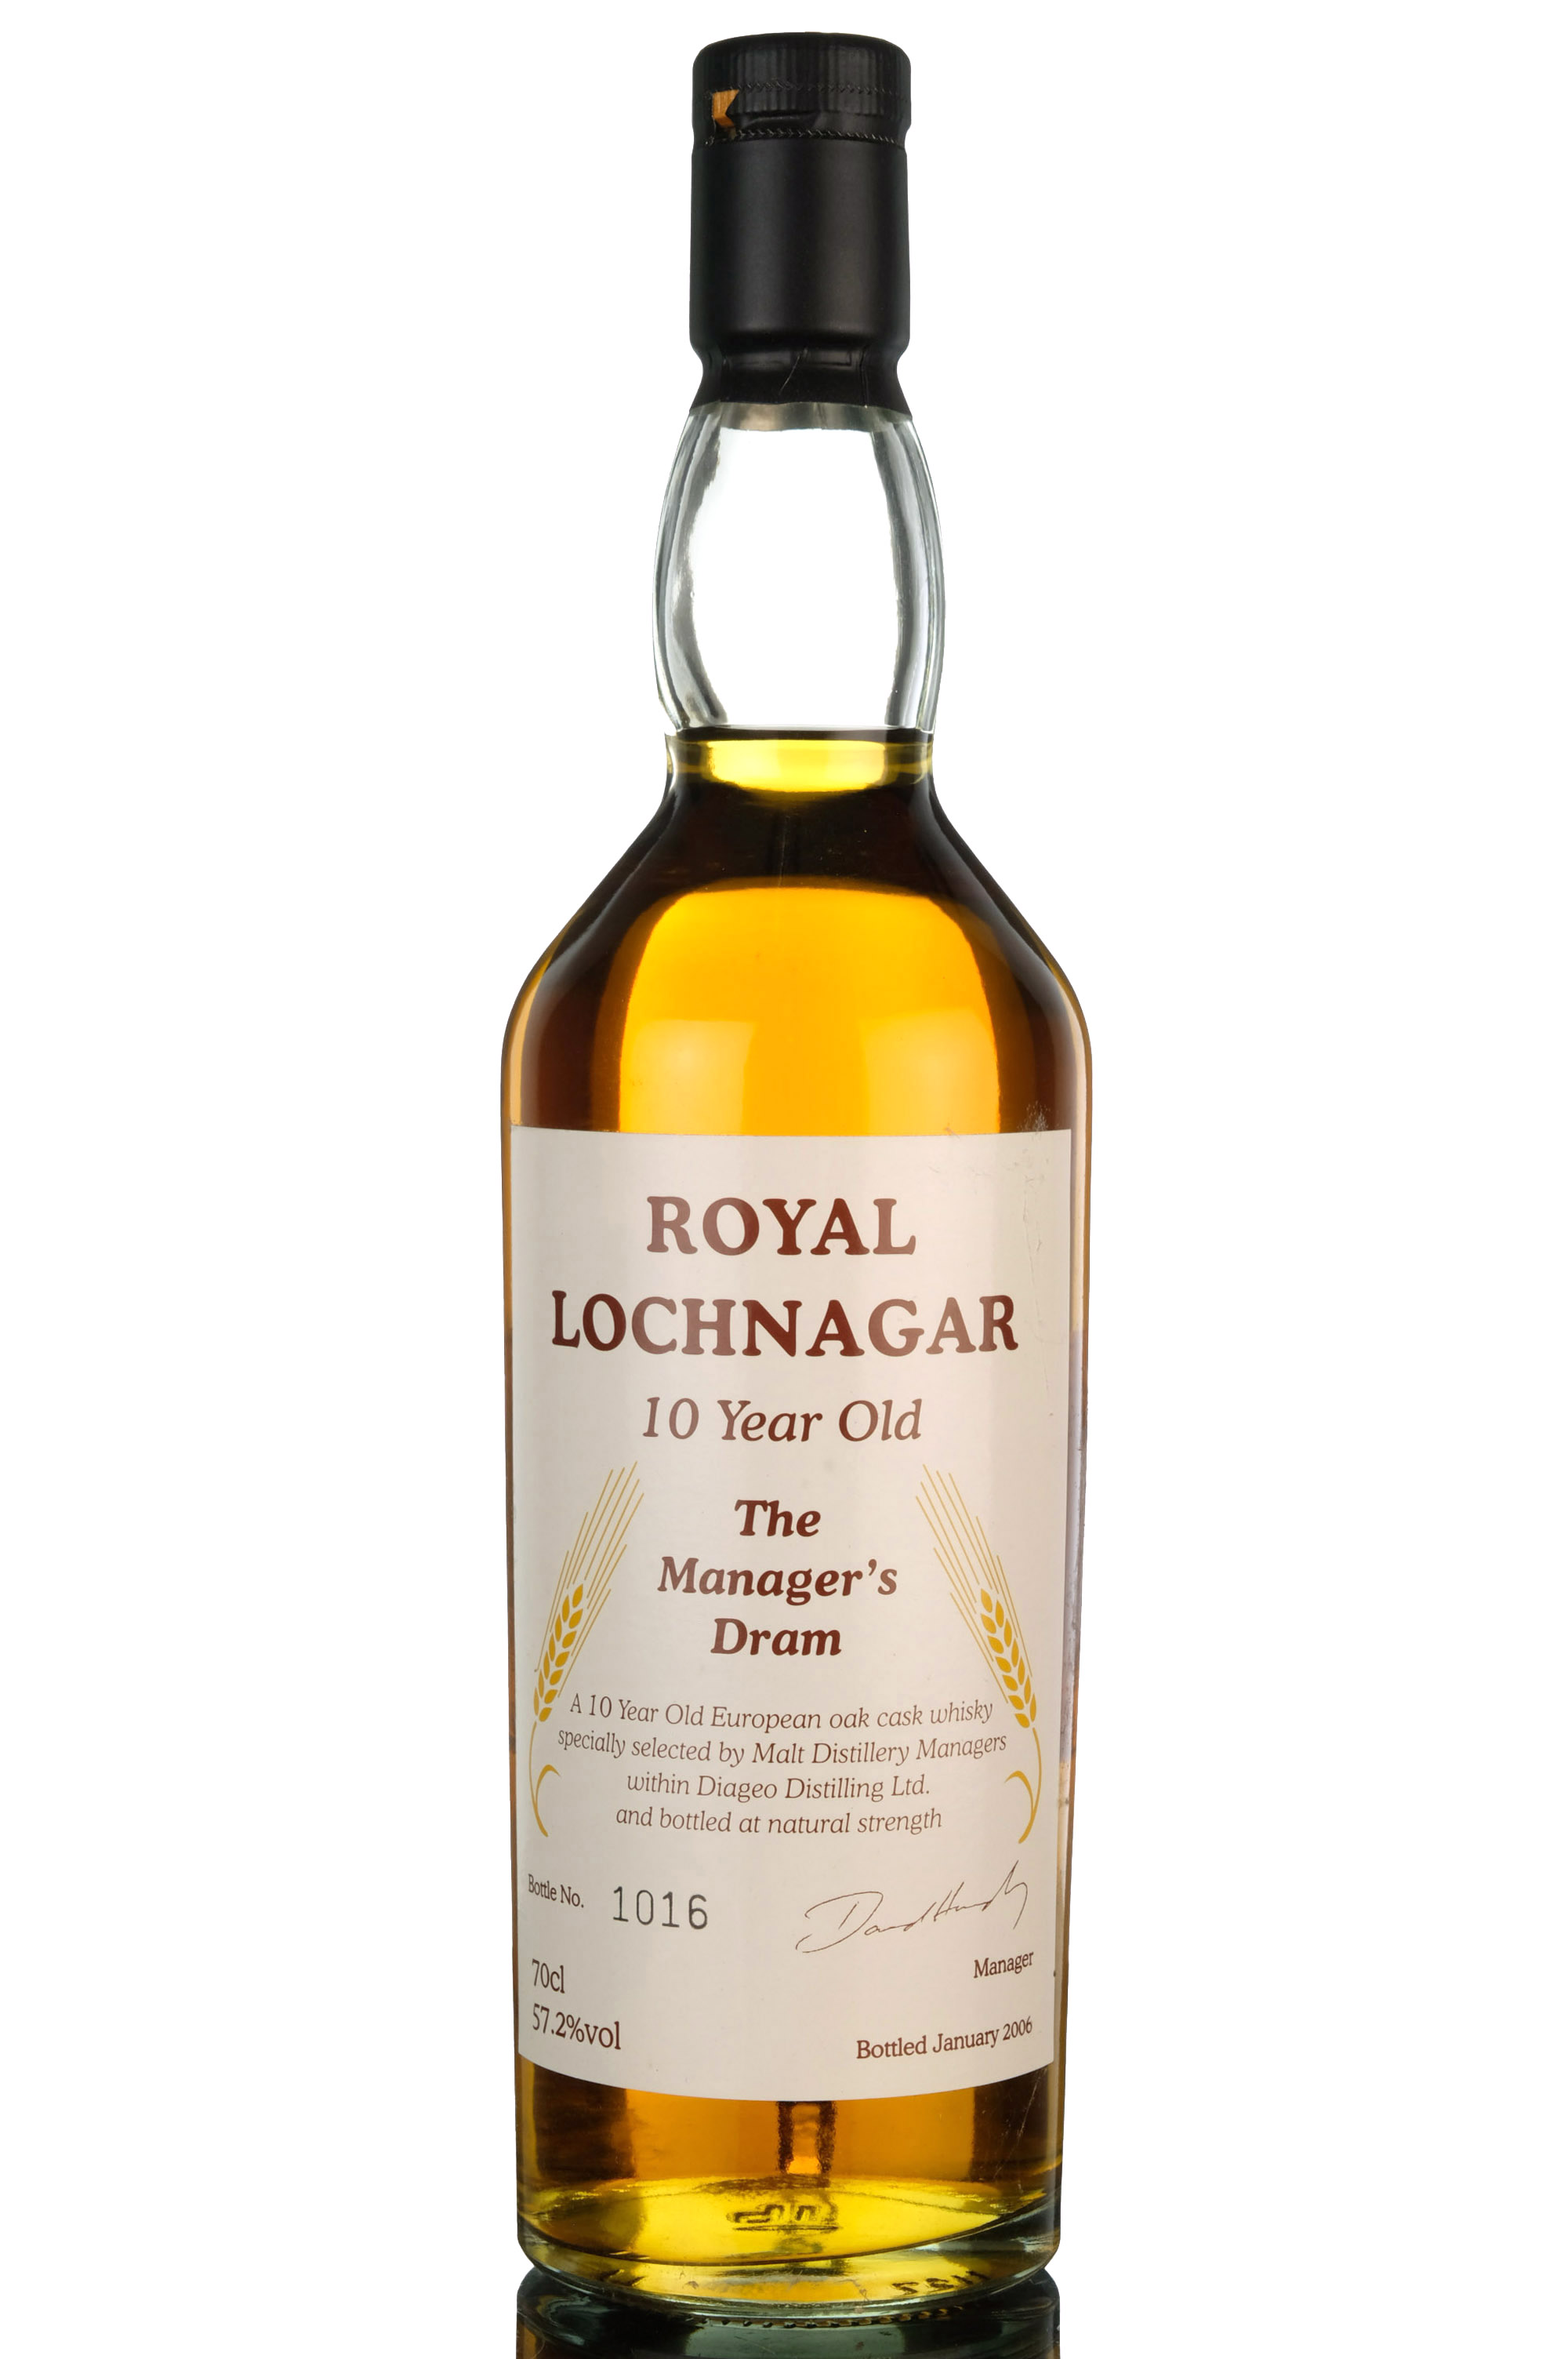 Royal Lochnagar 10 Year Old - Managers Dram 2006